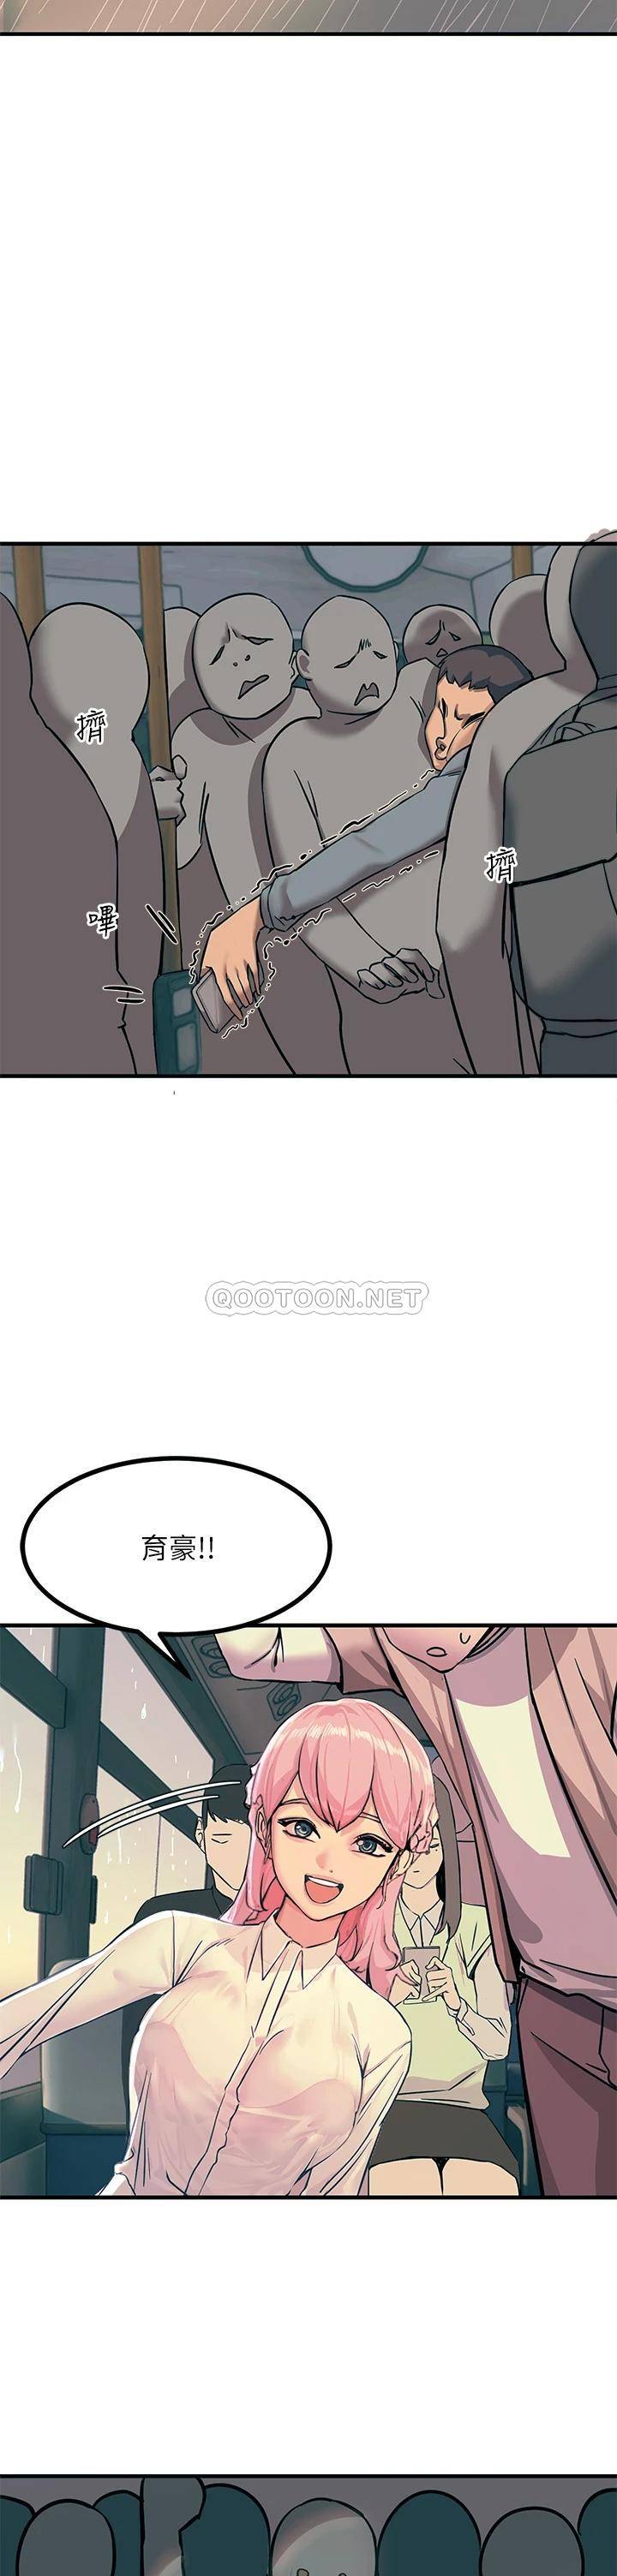 韩国污漫画 觸電大師 第1话 一览无遗的性敏感带 30